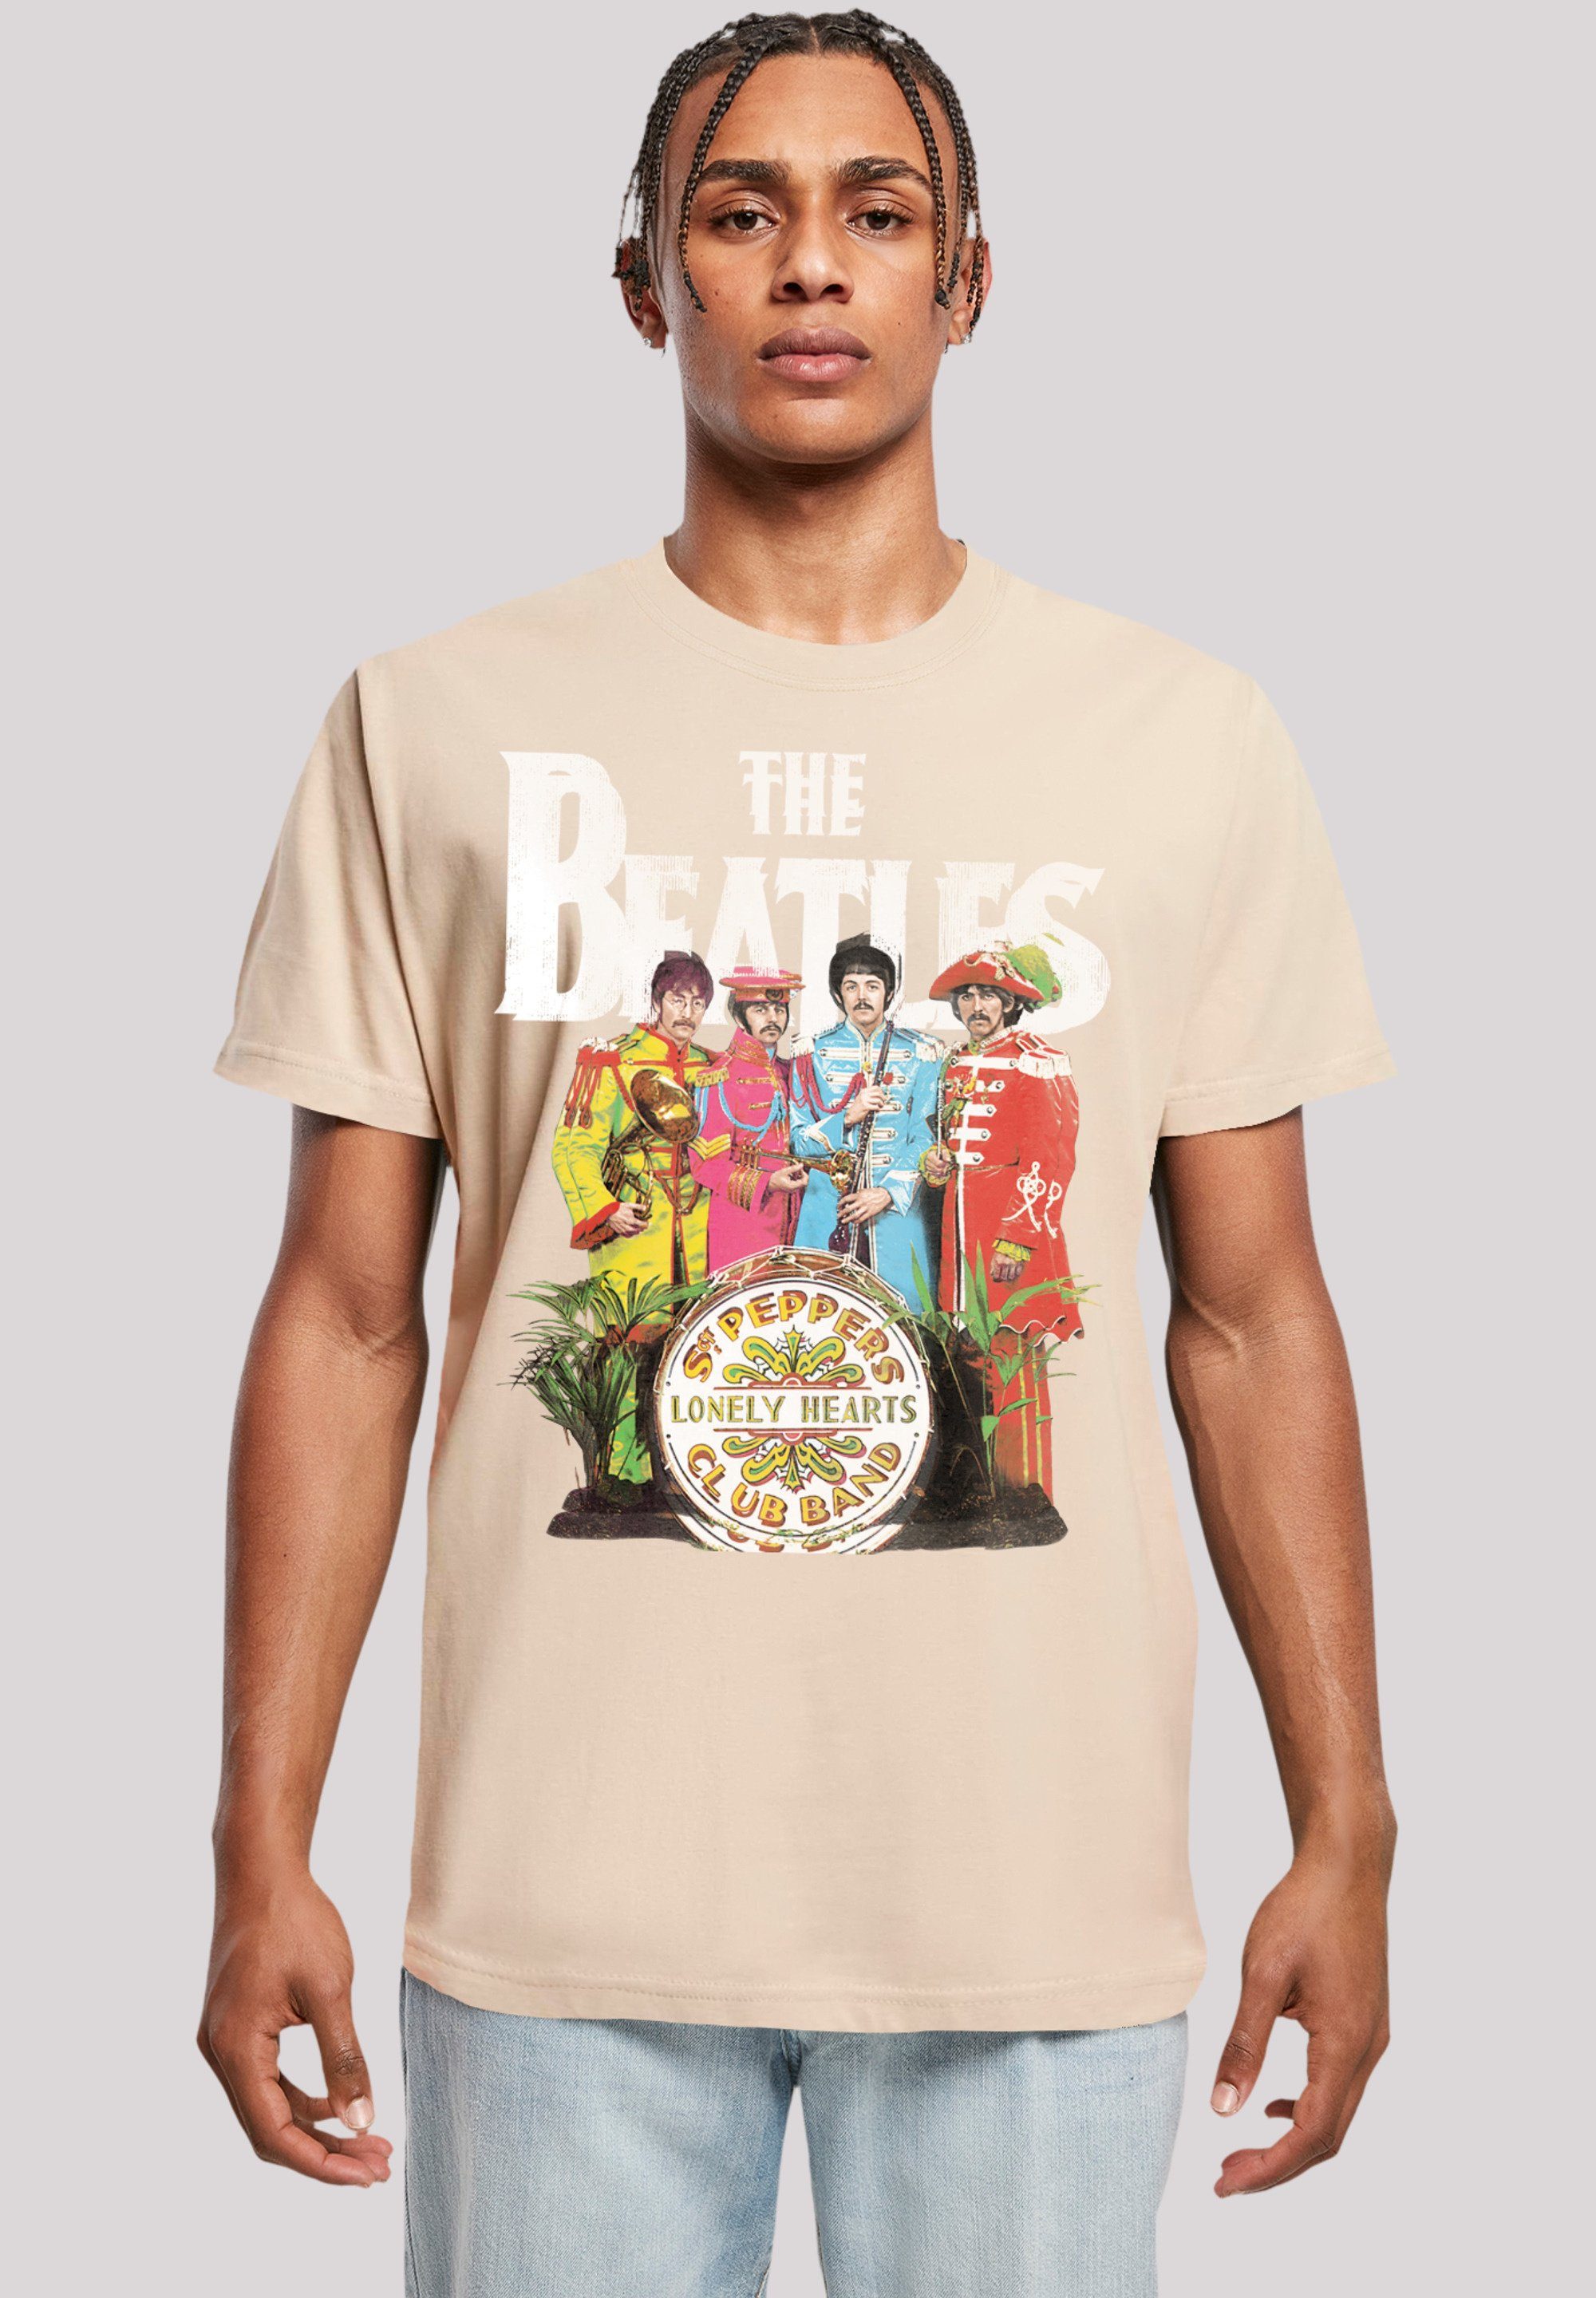 Sehr T-Shirt The weicher Tragekomfort F4NT4STIC Sgt mit Print, hohem Pepper Beatles Baumwollstoff